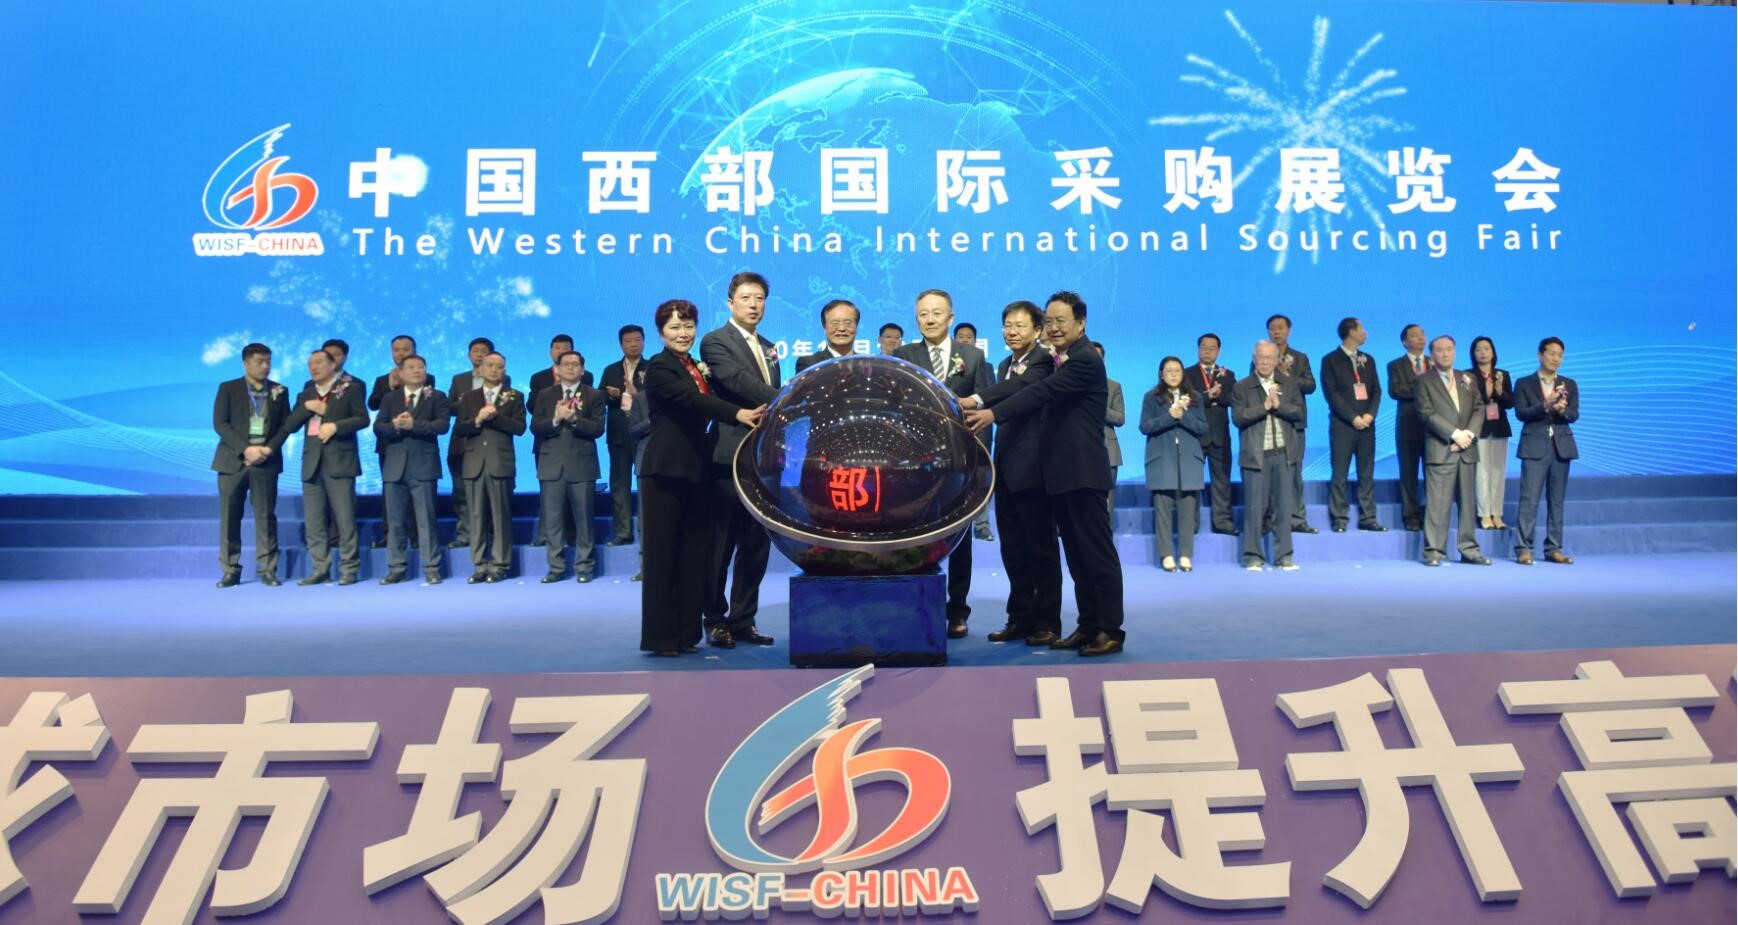 第二届中国西部国际采购 展览会将在西安举办